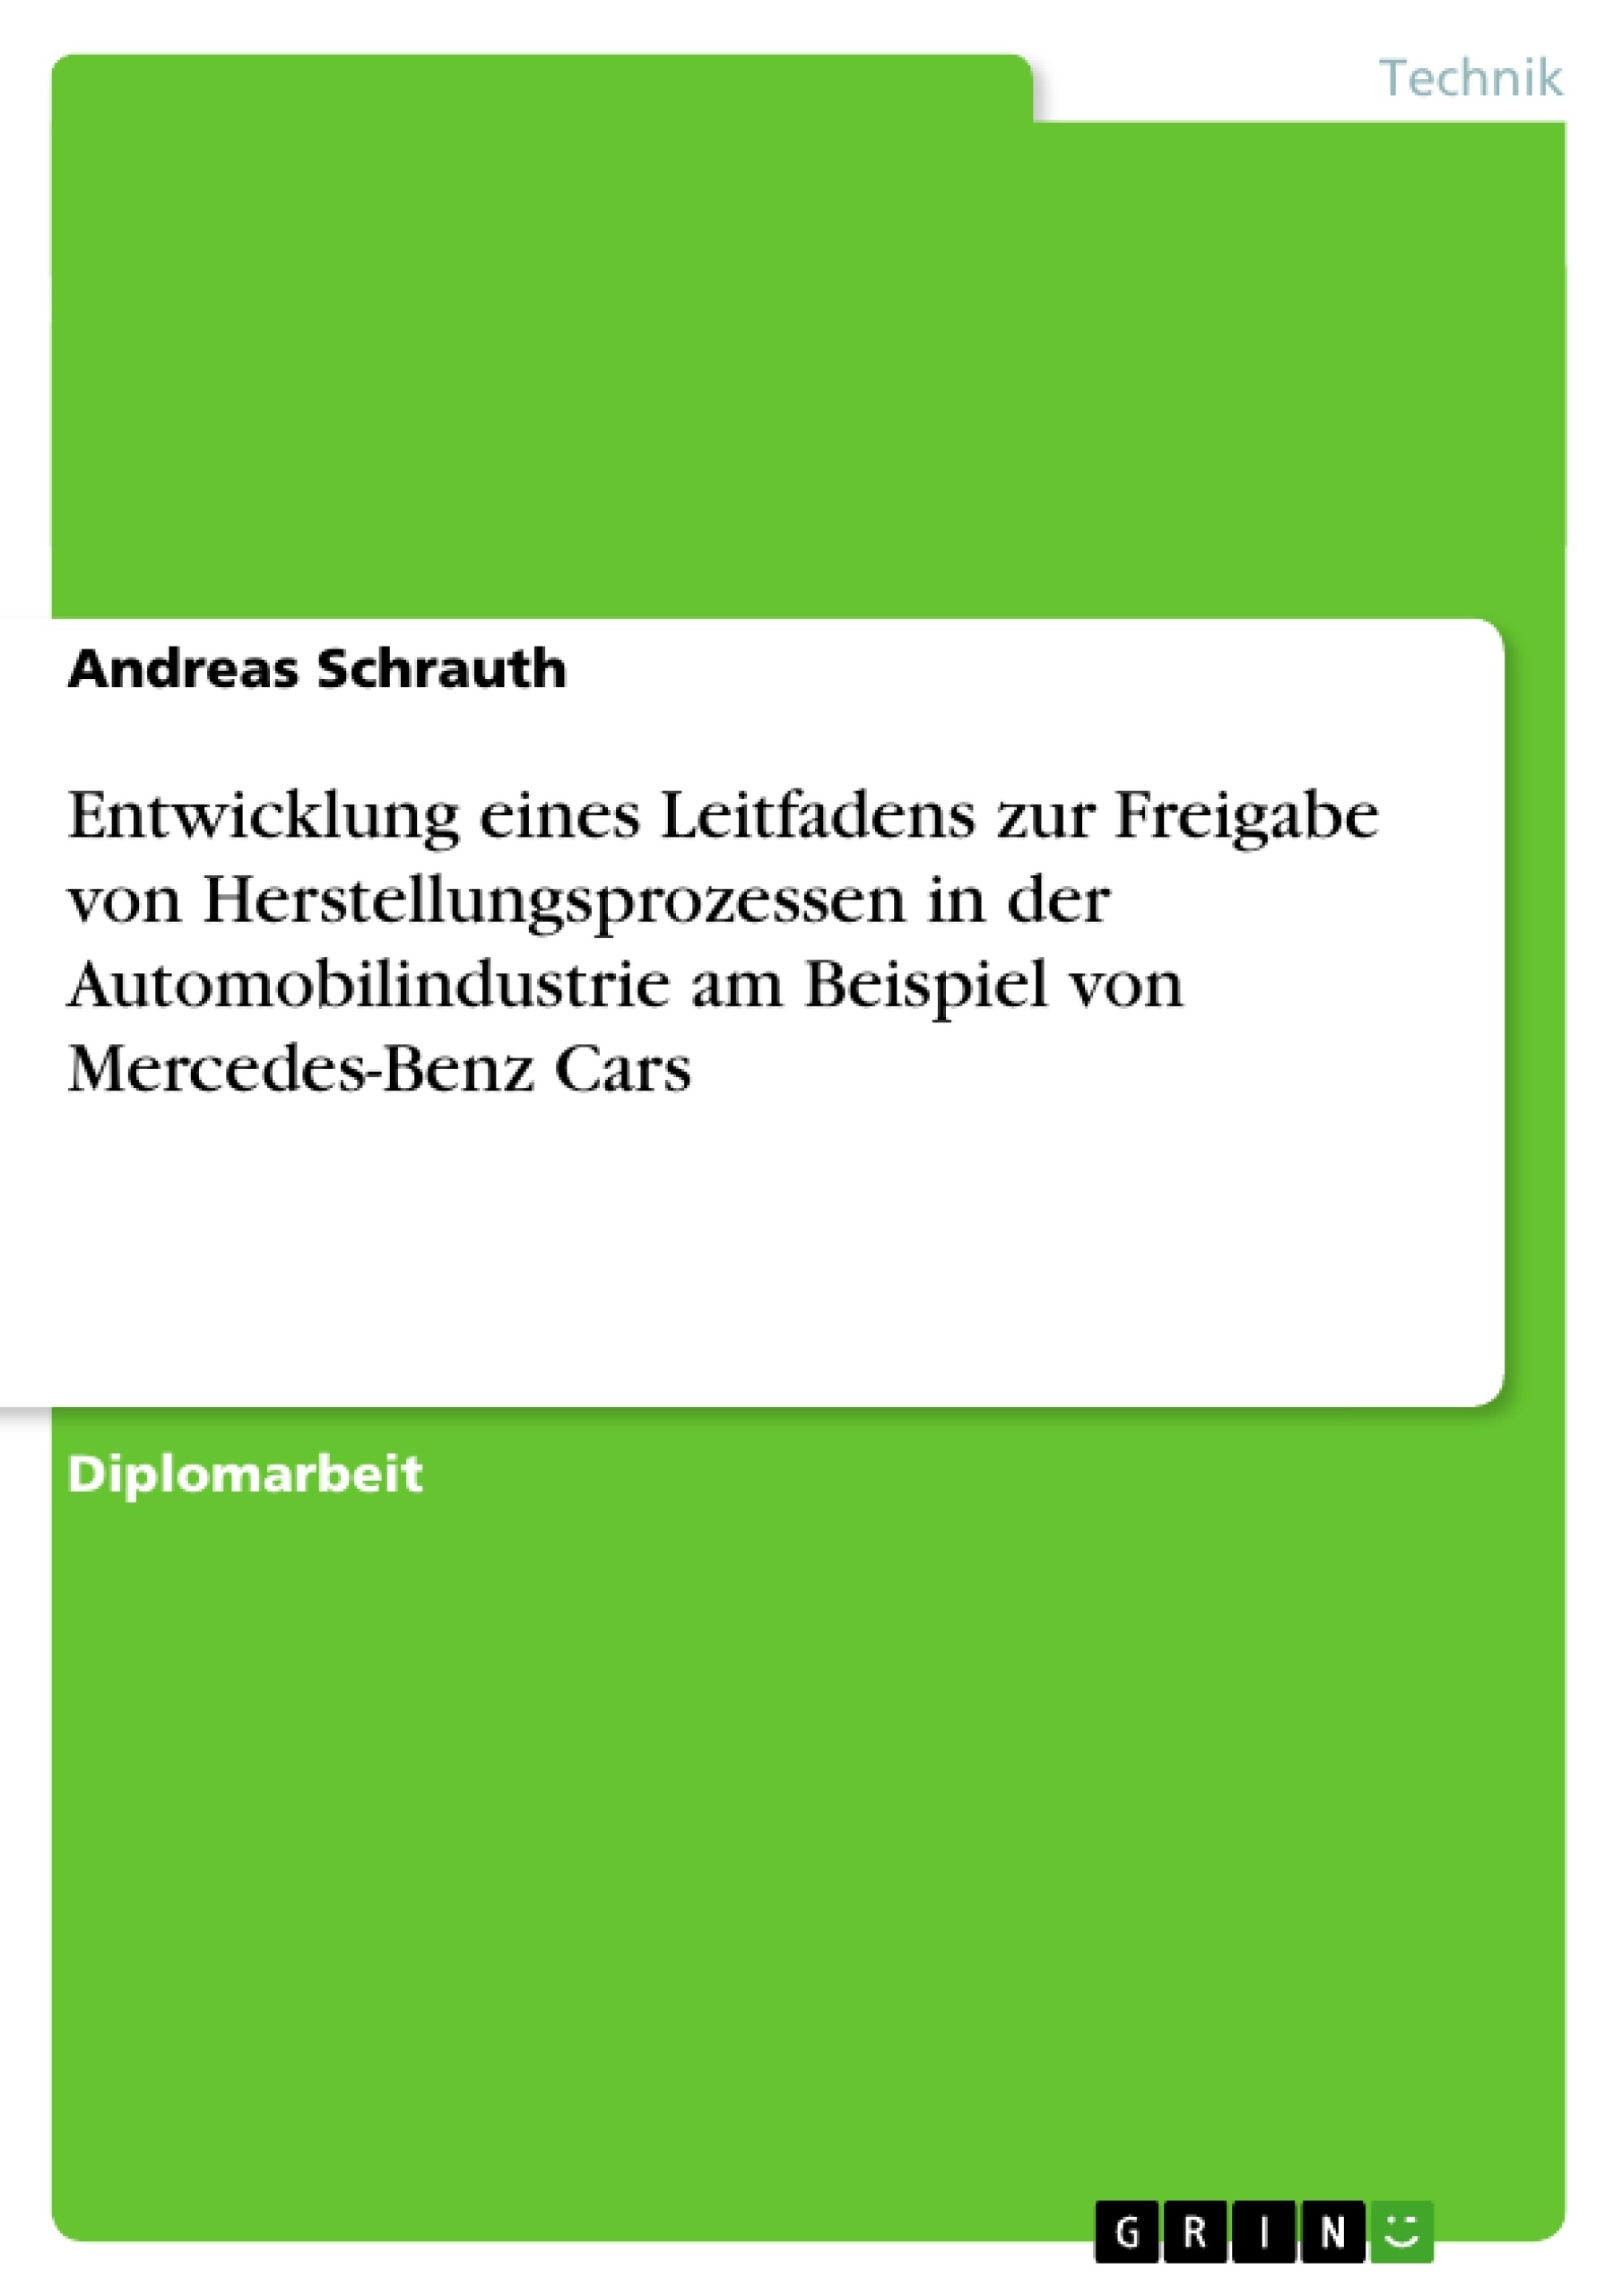 Titre: Entwicklung eines Leitfadens zur Freigabe von Herstellungsprozessen in der Automobilindustrie am Beispiel von Mercedes-Benz Cars